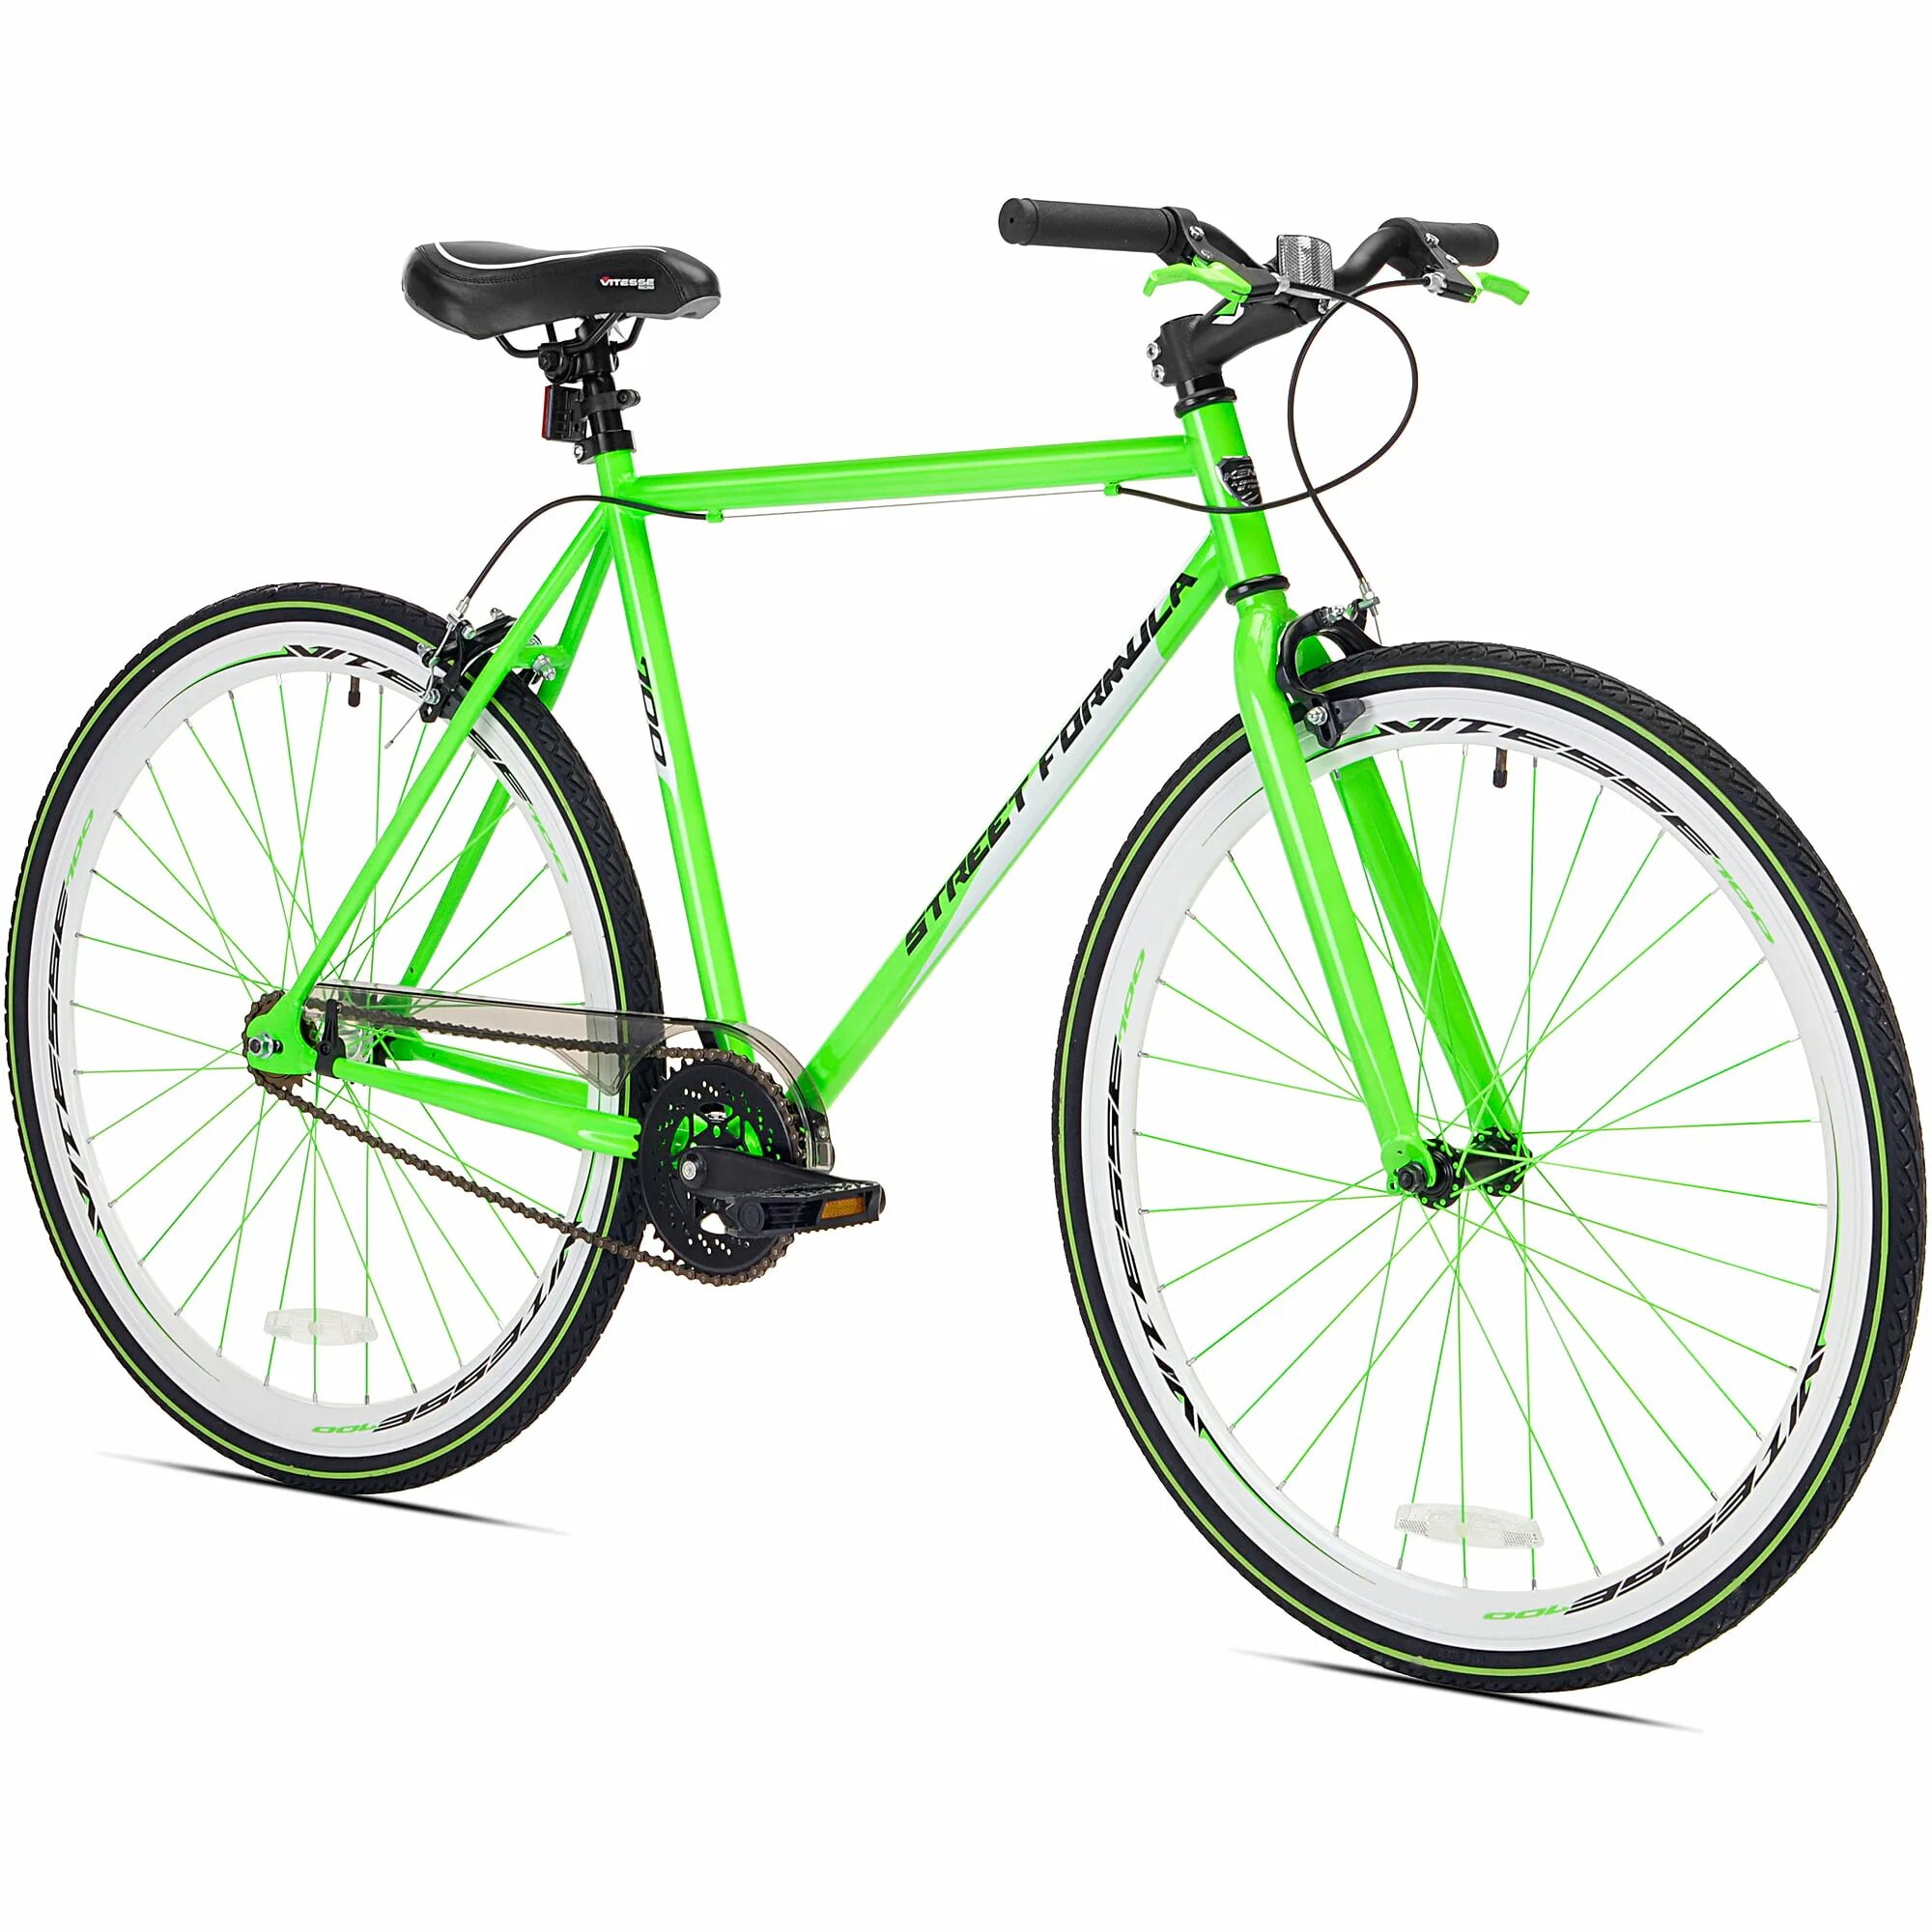 Дорожный велосипед 26 колеса. 700c Road Bike. Велосипед Green MTB. Велосипед Energy Bike 1.0 зеленый. Велосипед Green спорт Bike.